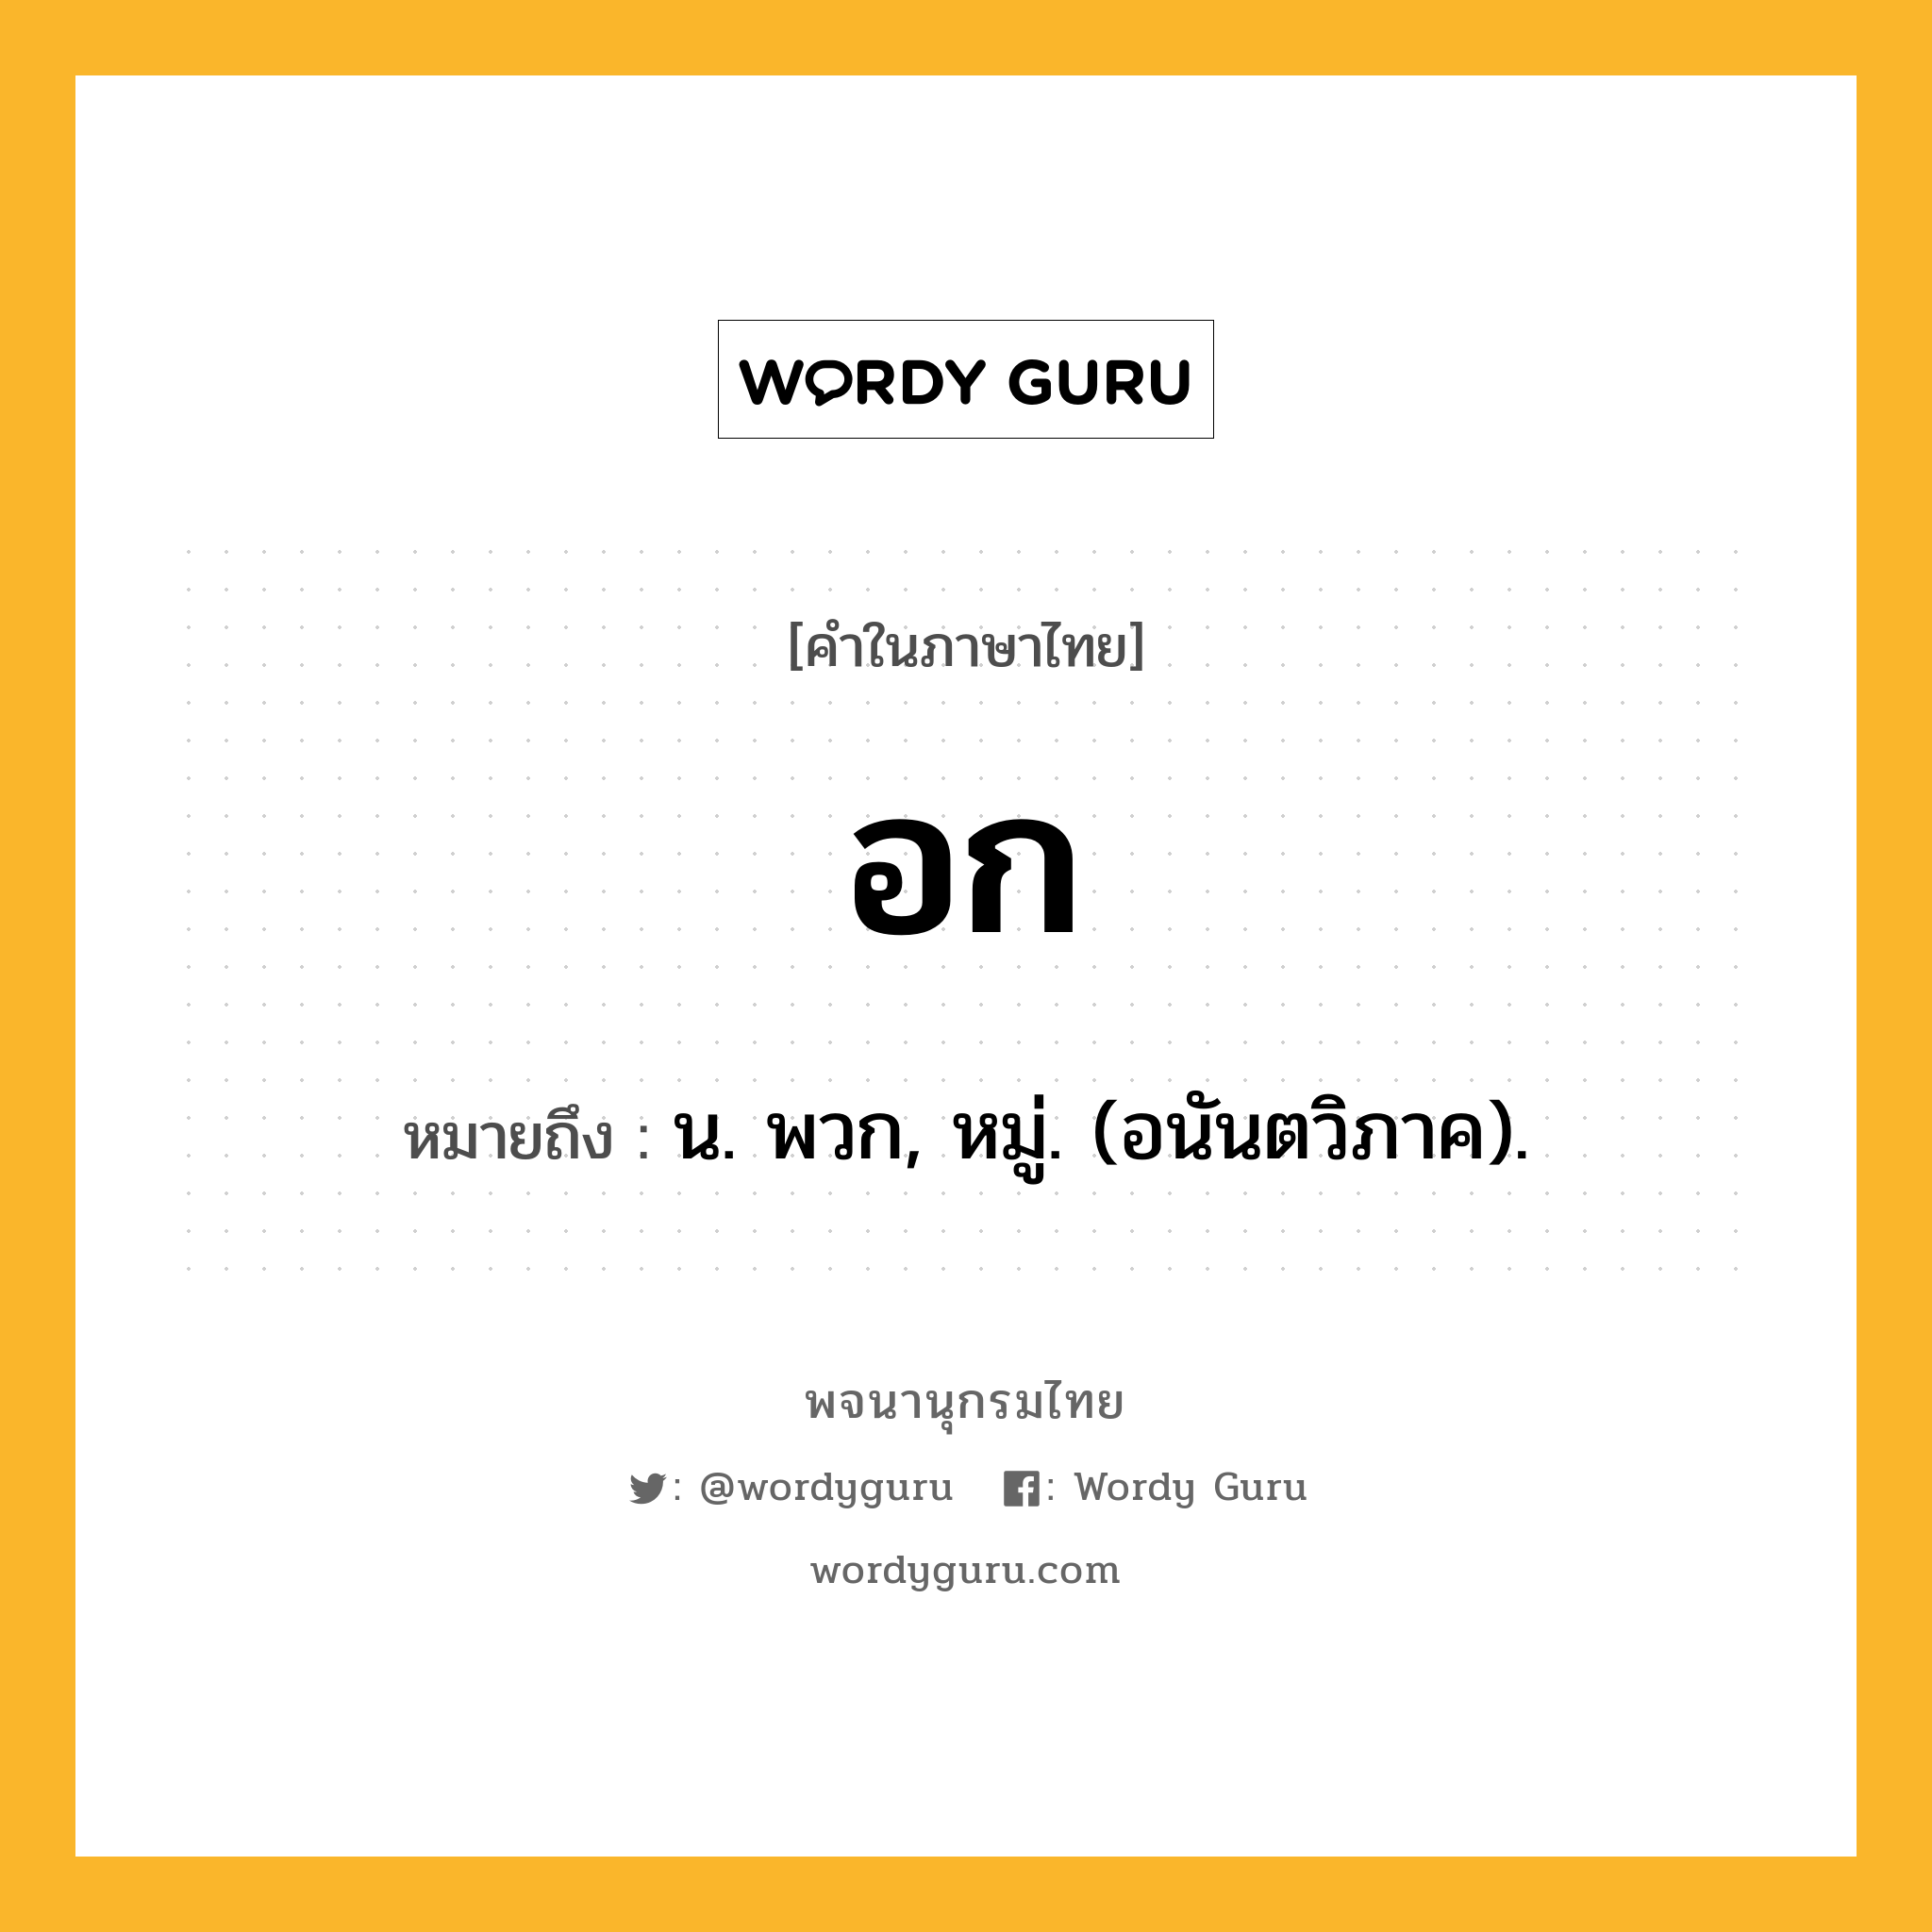 อก ความหมาย หมายถึงอะไร?, คำในภาษาไทย อก หมายถึง น. พวก, หมู่. (อนันตวิภาค).